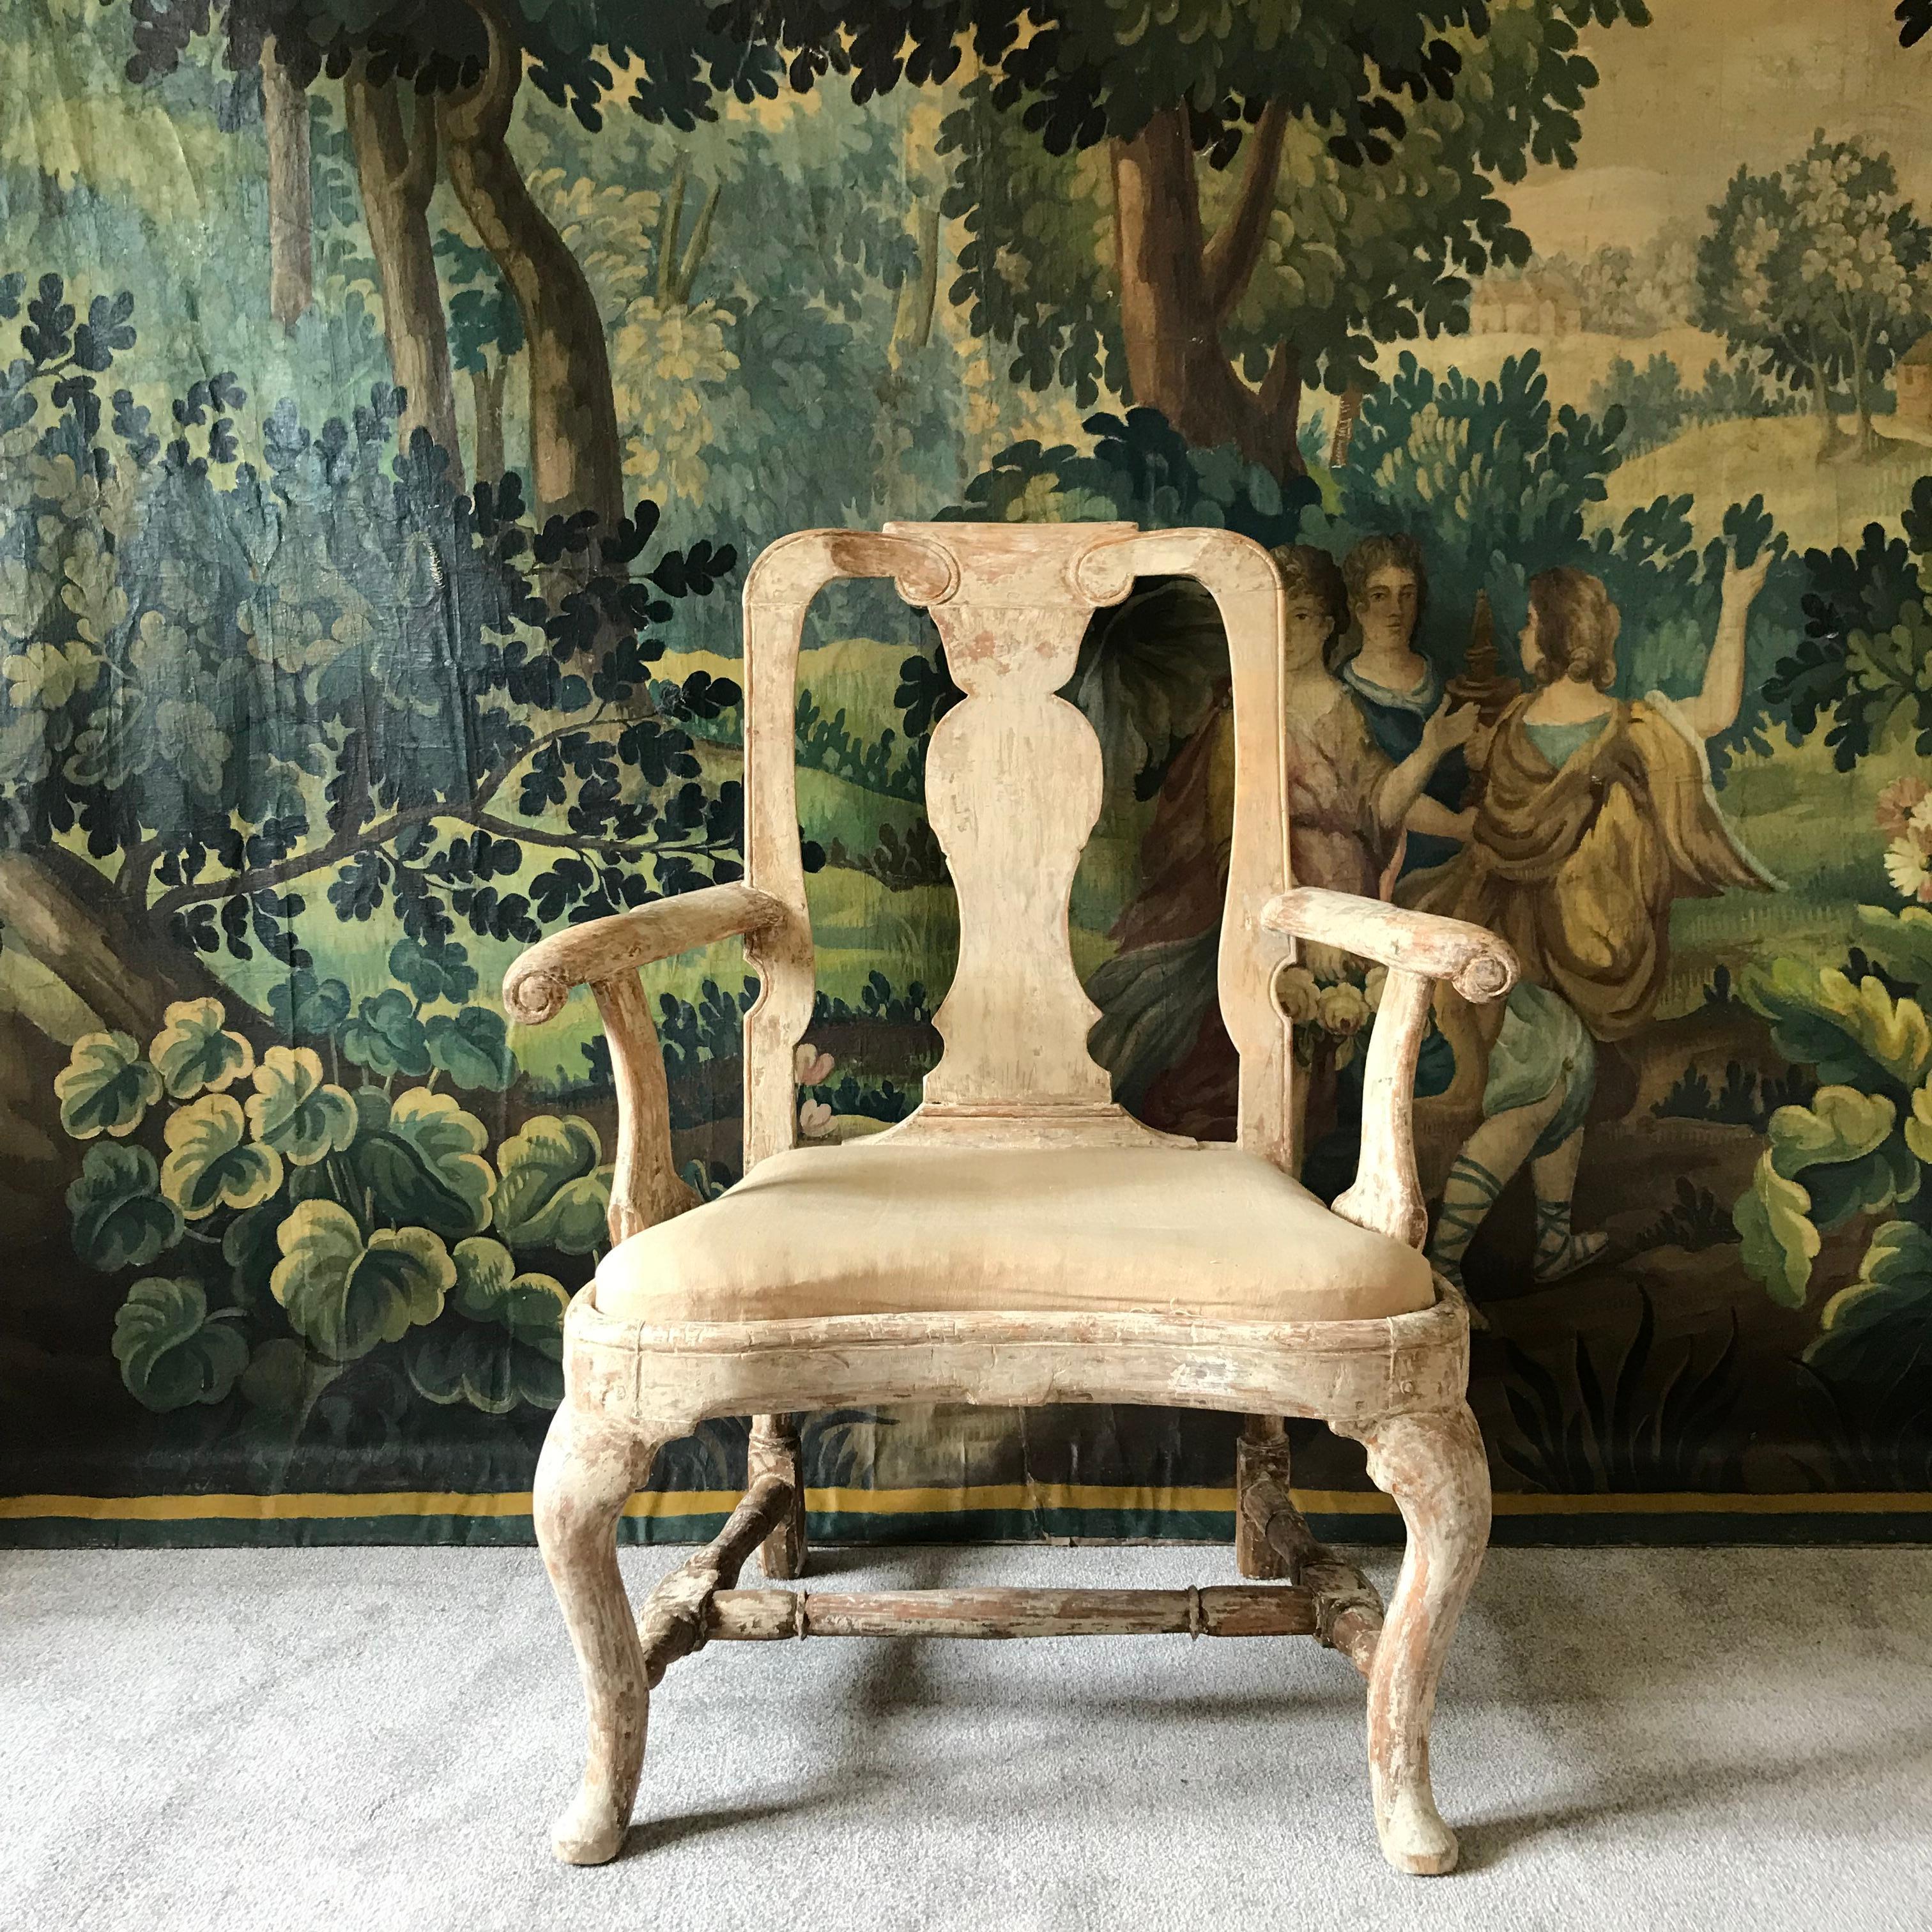 Un très beau fauteuil rococo d'époque suédoise du 18ème siècle qui a été soigneusement gratté à sec pour retrouver son aspect d'origine.  peinture crème pâle d'origine (non retouchée ou repeinte) 
Il s'agit d'un très bon exemple sculpté à la main